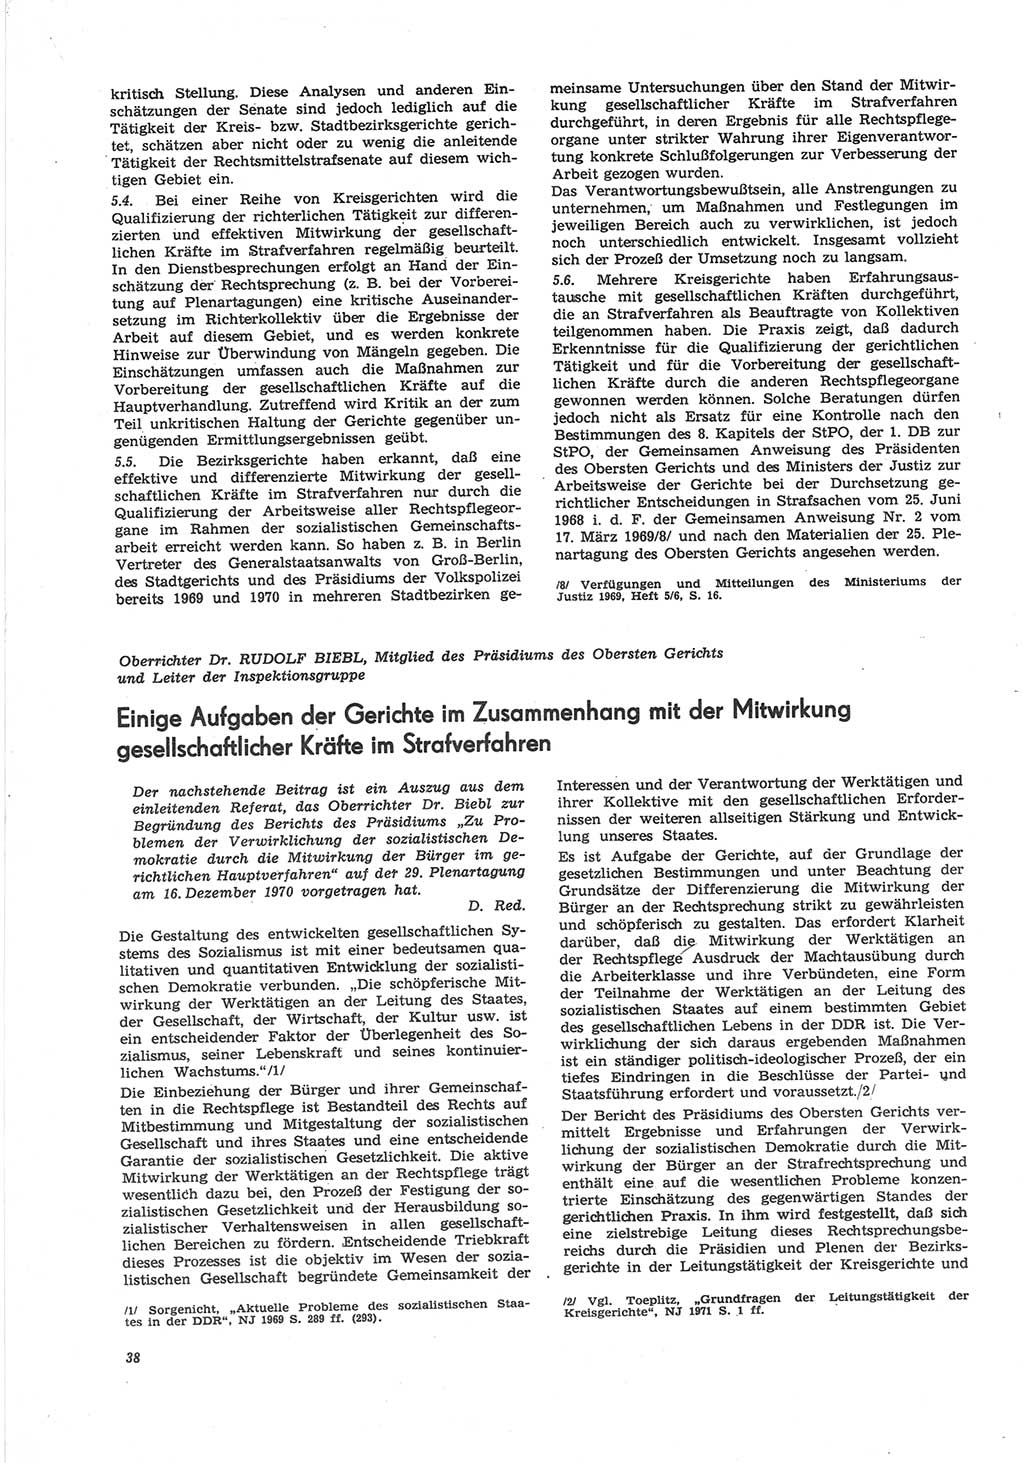 Neue Justiz (NJ), Zeitschrift für Recht und Rechtswissenschaft [Deutsche Demokratische Republik (DDR)], 25. Jahrgang 1971, Seite 38 (NJ DDR 1971, S. 38)